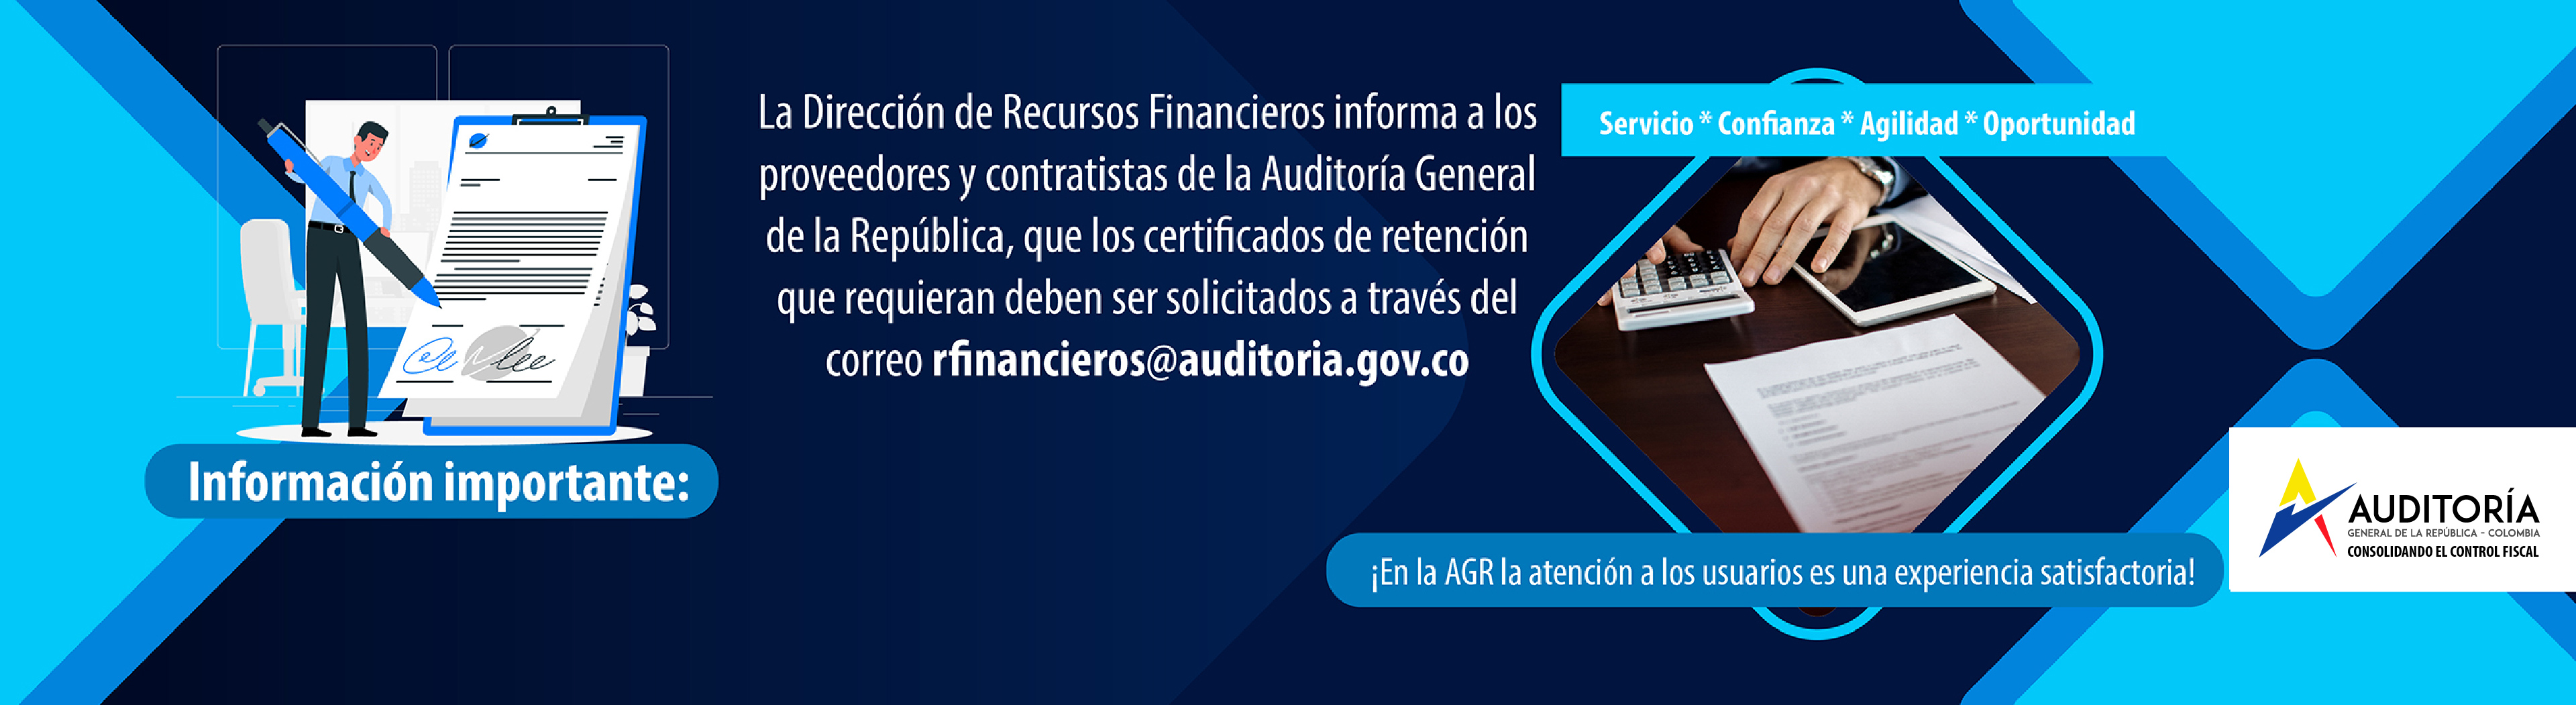 Correo Recursos Financieros certificaciones